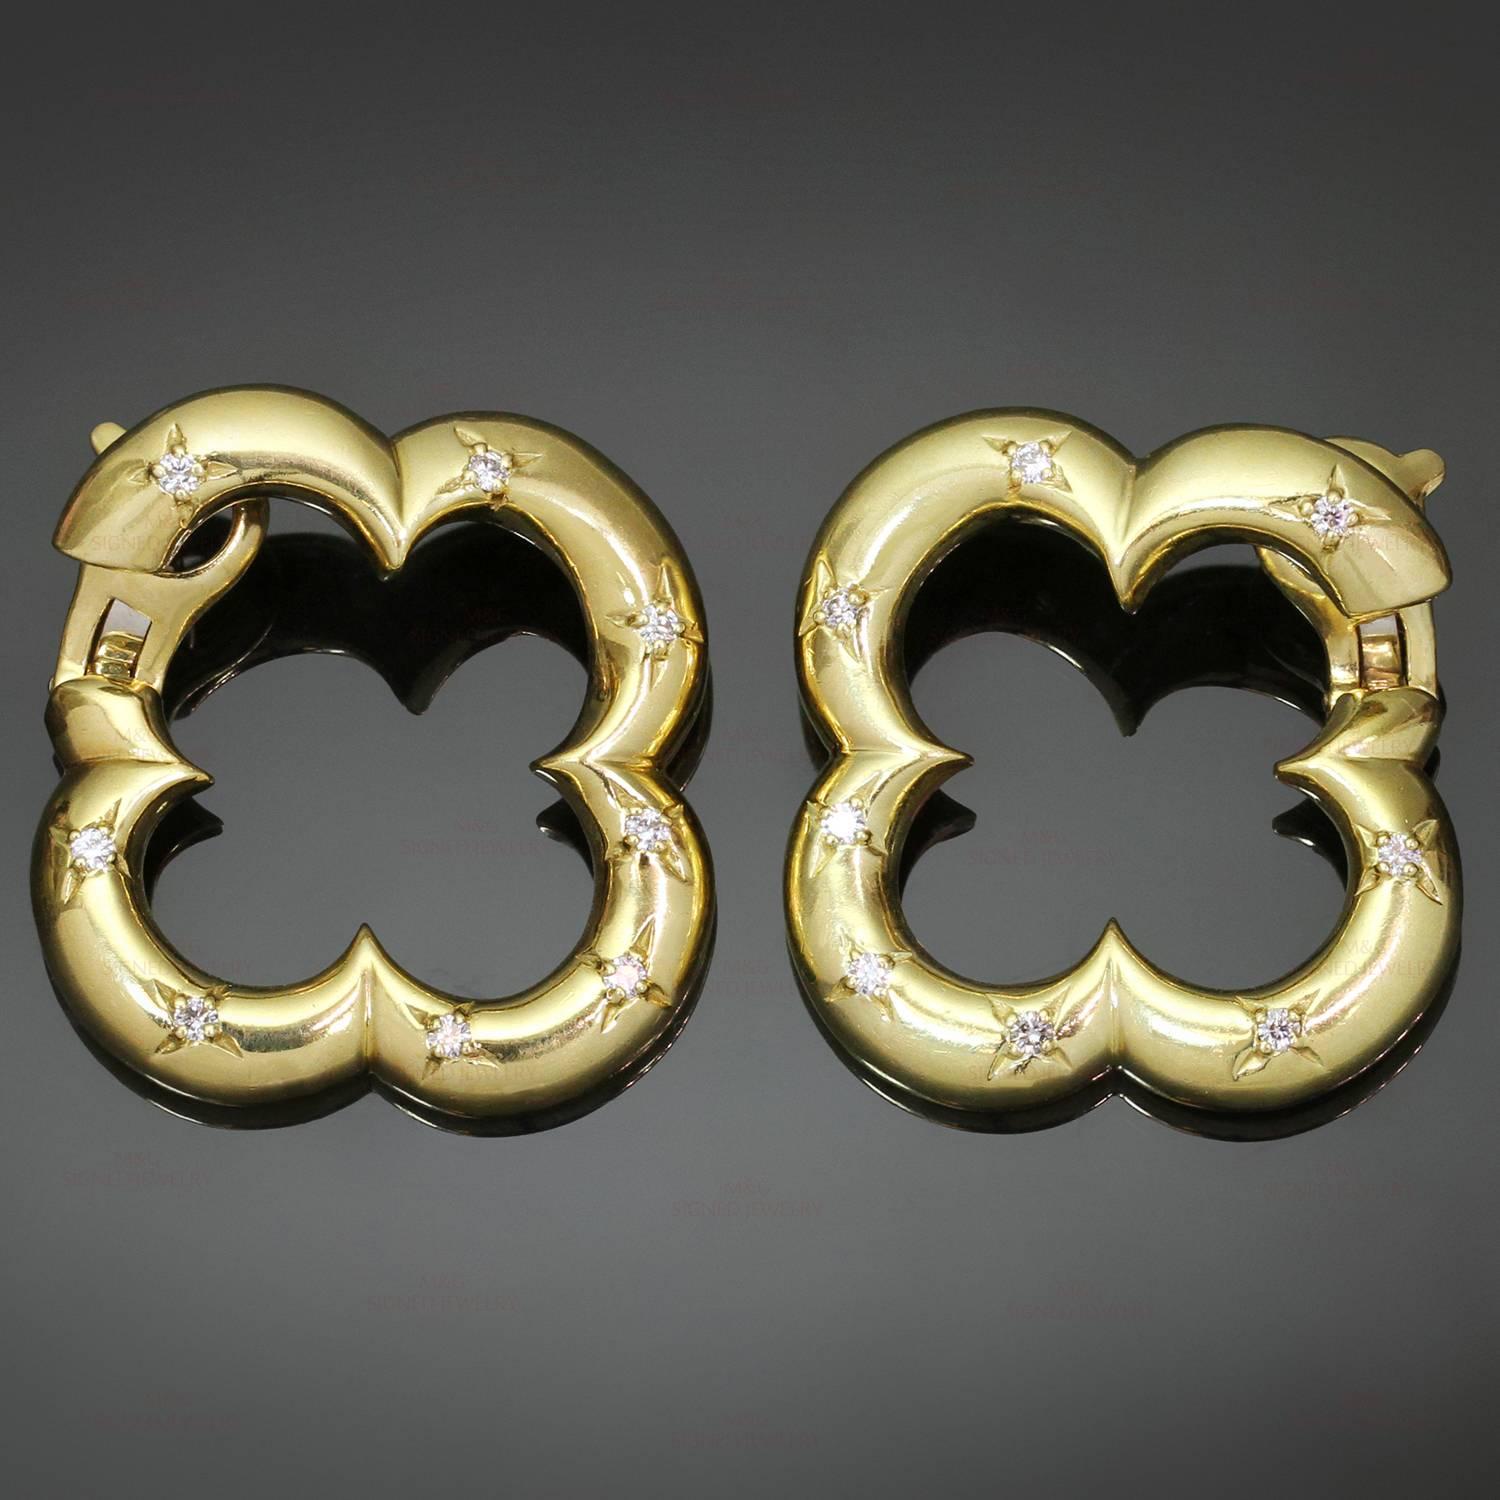 Diese atemberaubenden Ohrringe mit Hebelverschluss aus der Kollektion Alhambra von Van Cleef & Arpels sind aus 18 Karat Gelbgold gefertigt und mit 16 Diamanten im Brillantschliff von schätzungsweise 0,56 Karat besetzt. Ein ikonisches und festliches